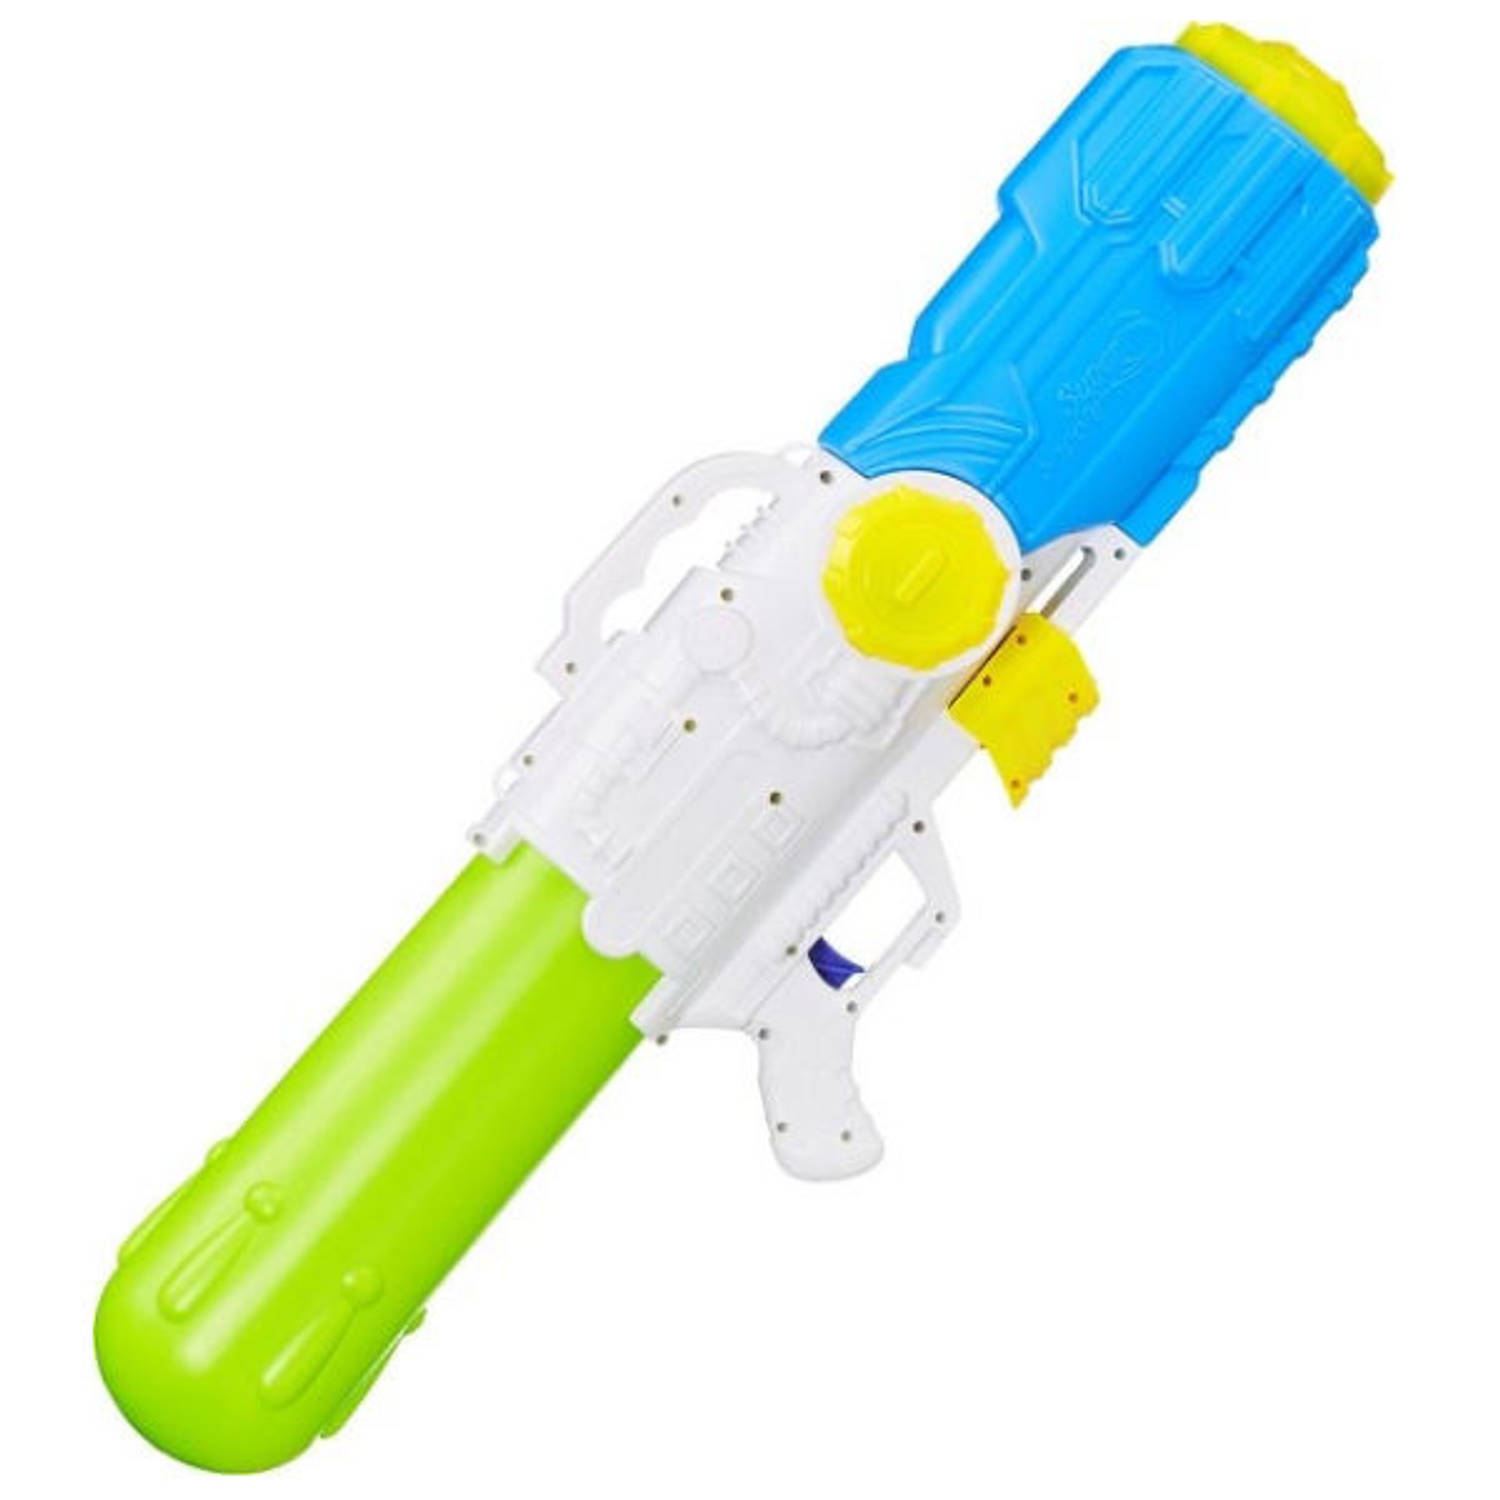 XXL Waterpistool - Super soaker waterpistool voor - Jumbo Blokker